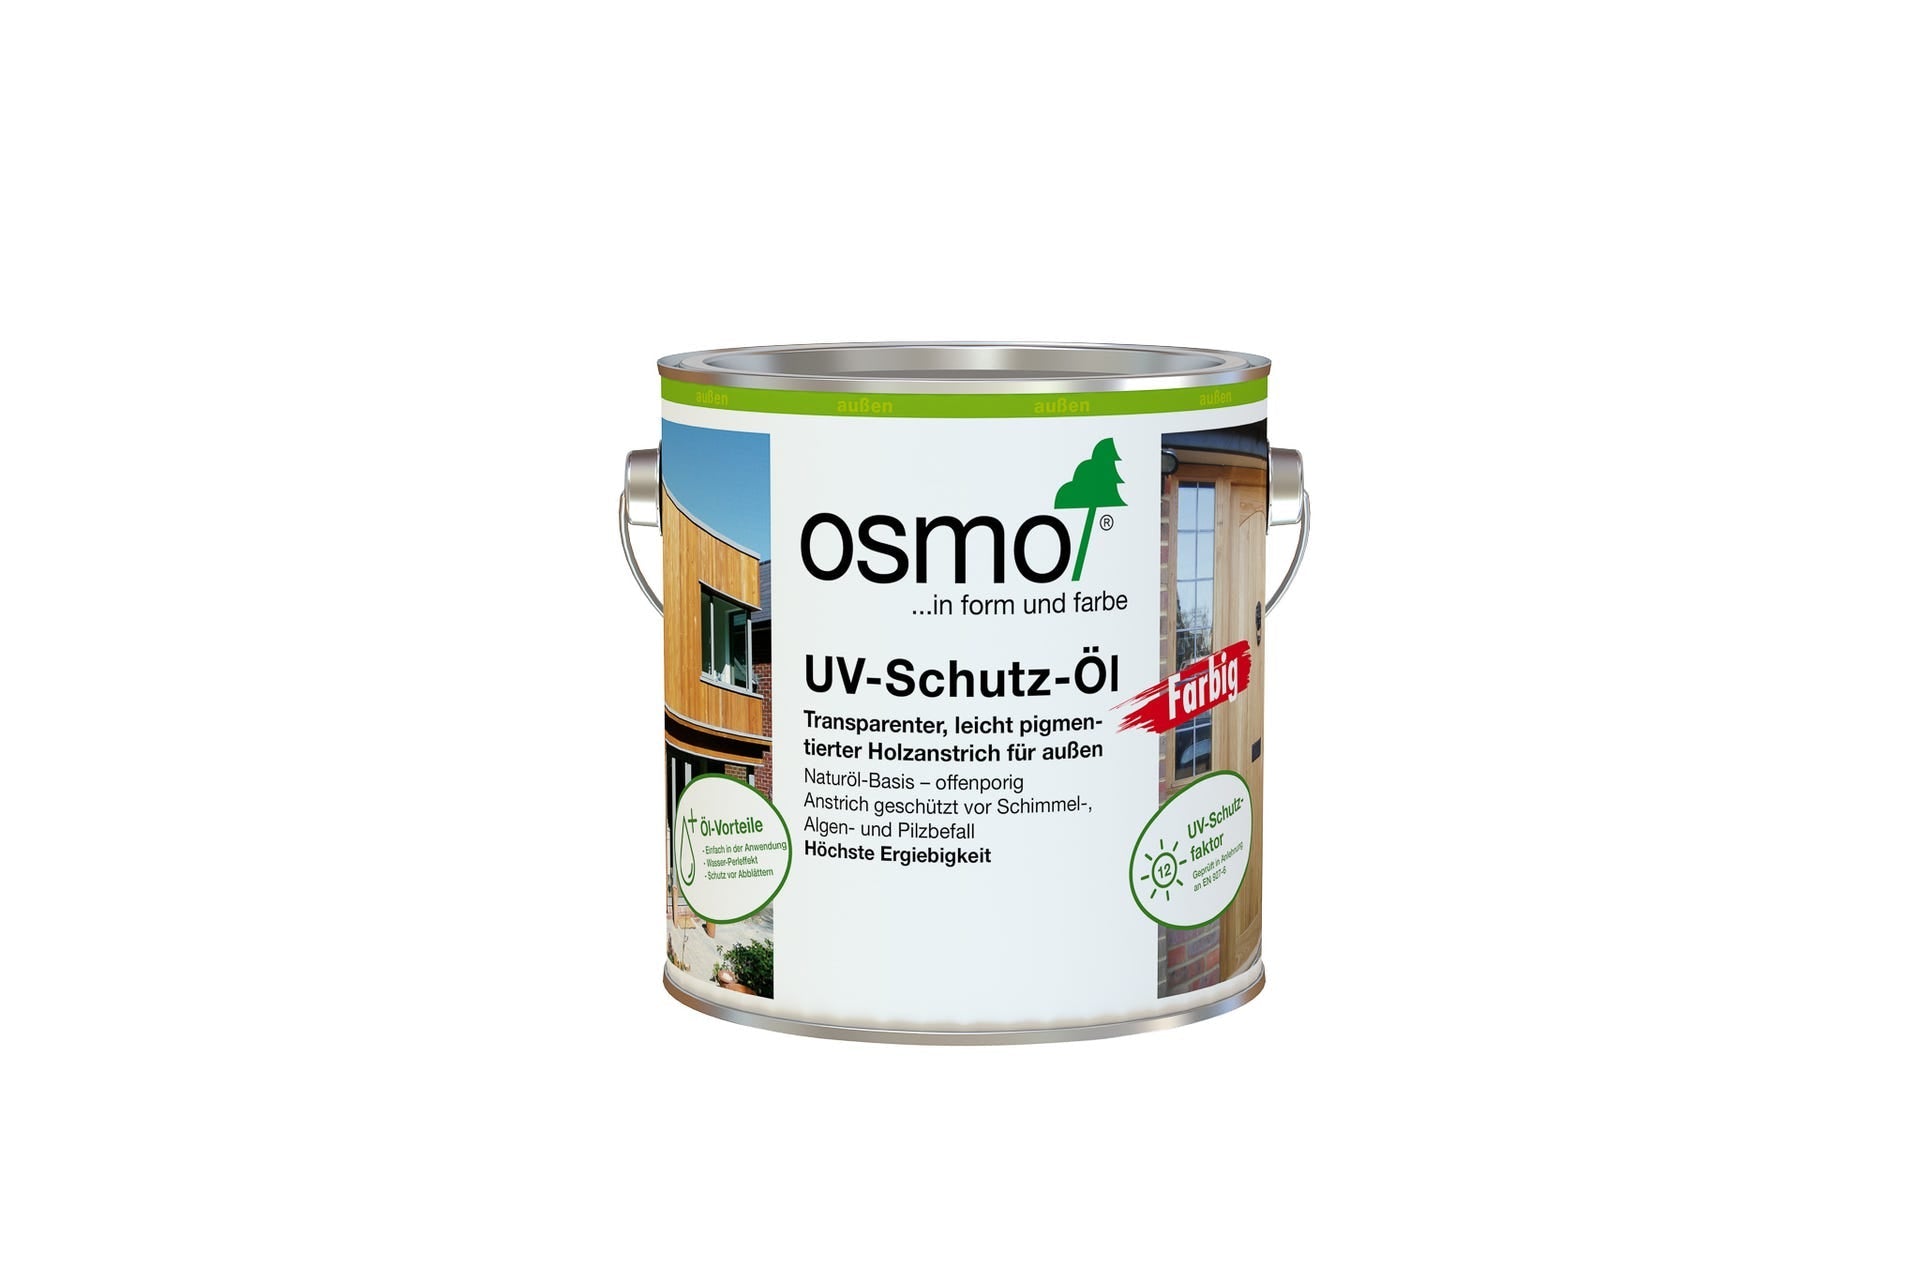 UV Schutz-ÖL farblos - gegen Vergrauung - Osmo - kaufen Meine Holzhandlung - Holz kaufen München